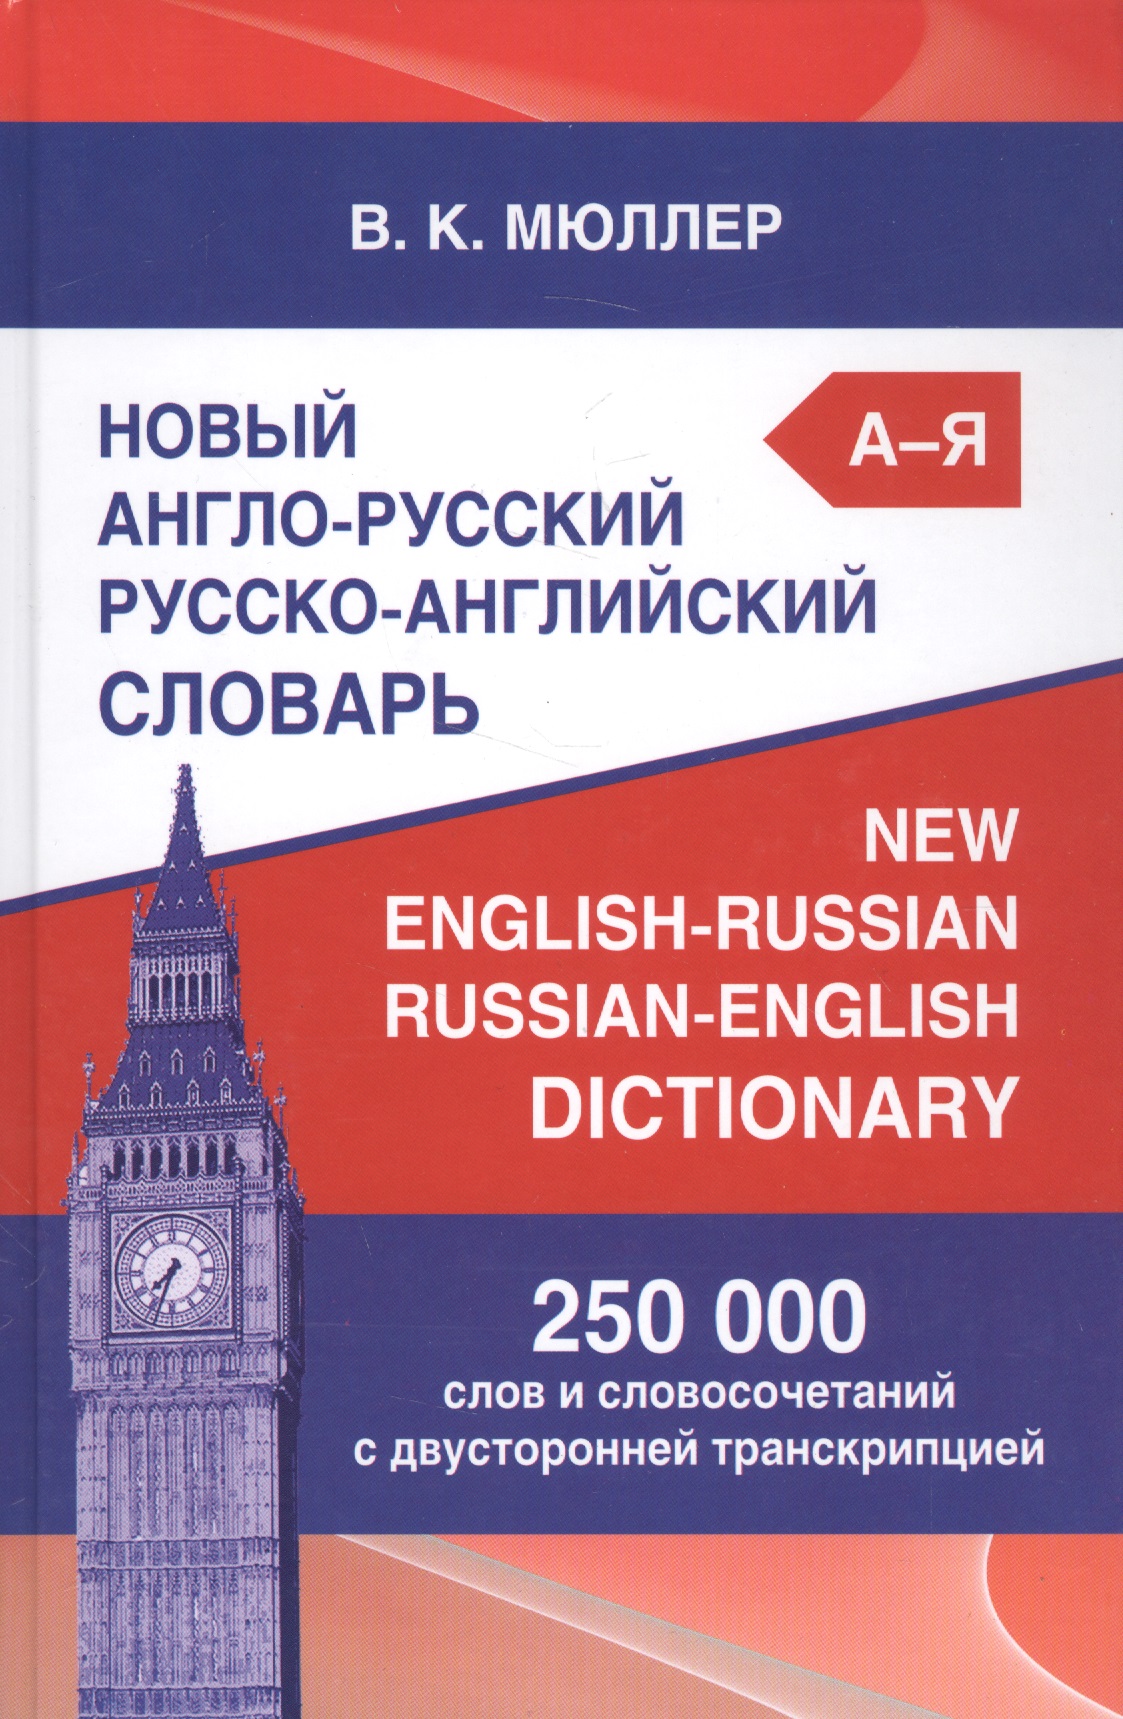 Новый англо-русский русско-английский словарь Мюллера 250 000 слов и словосочетаний с двусторонней транскрипцией